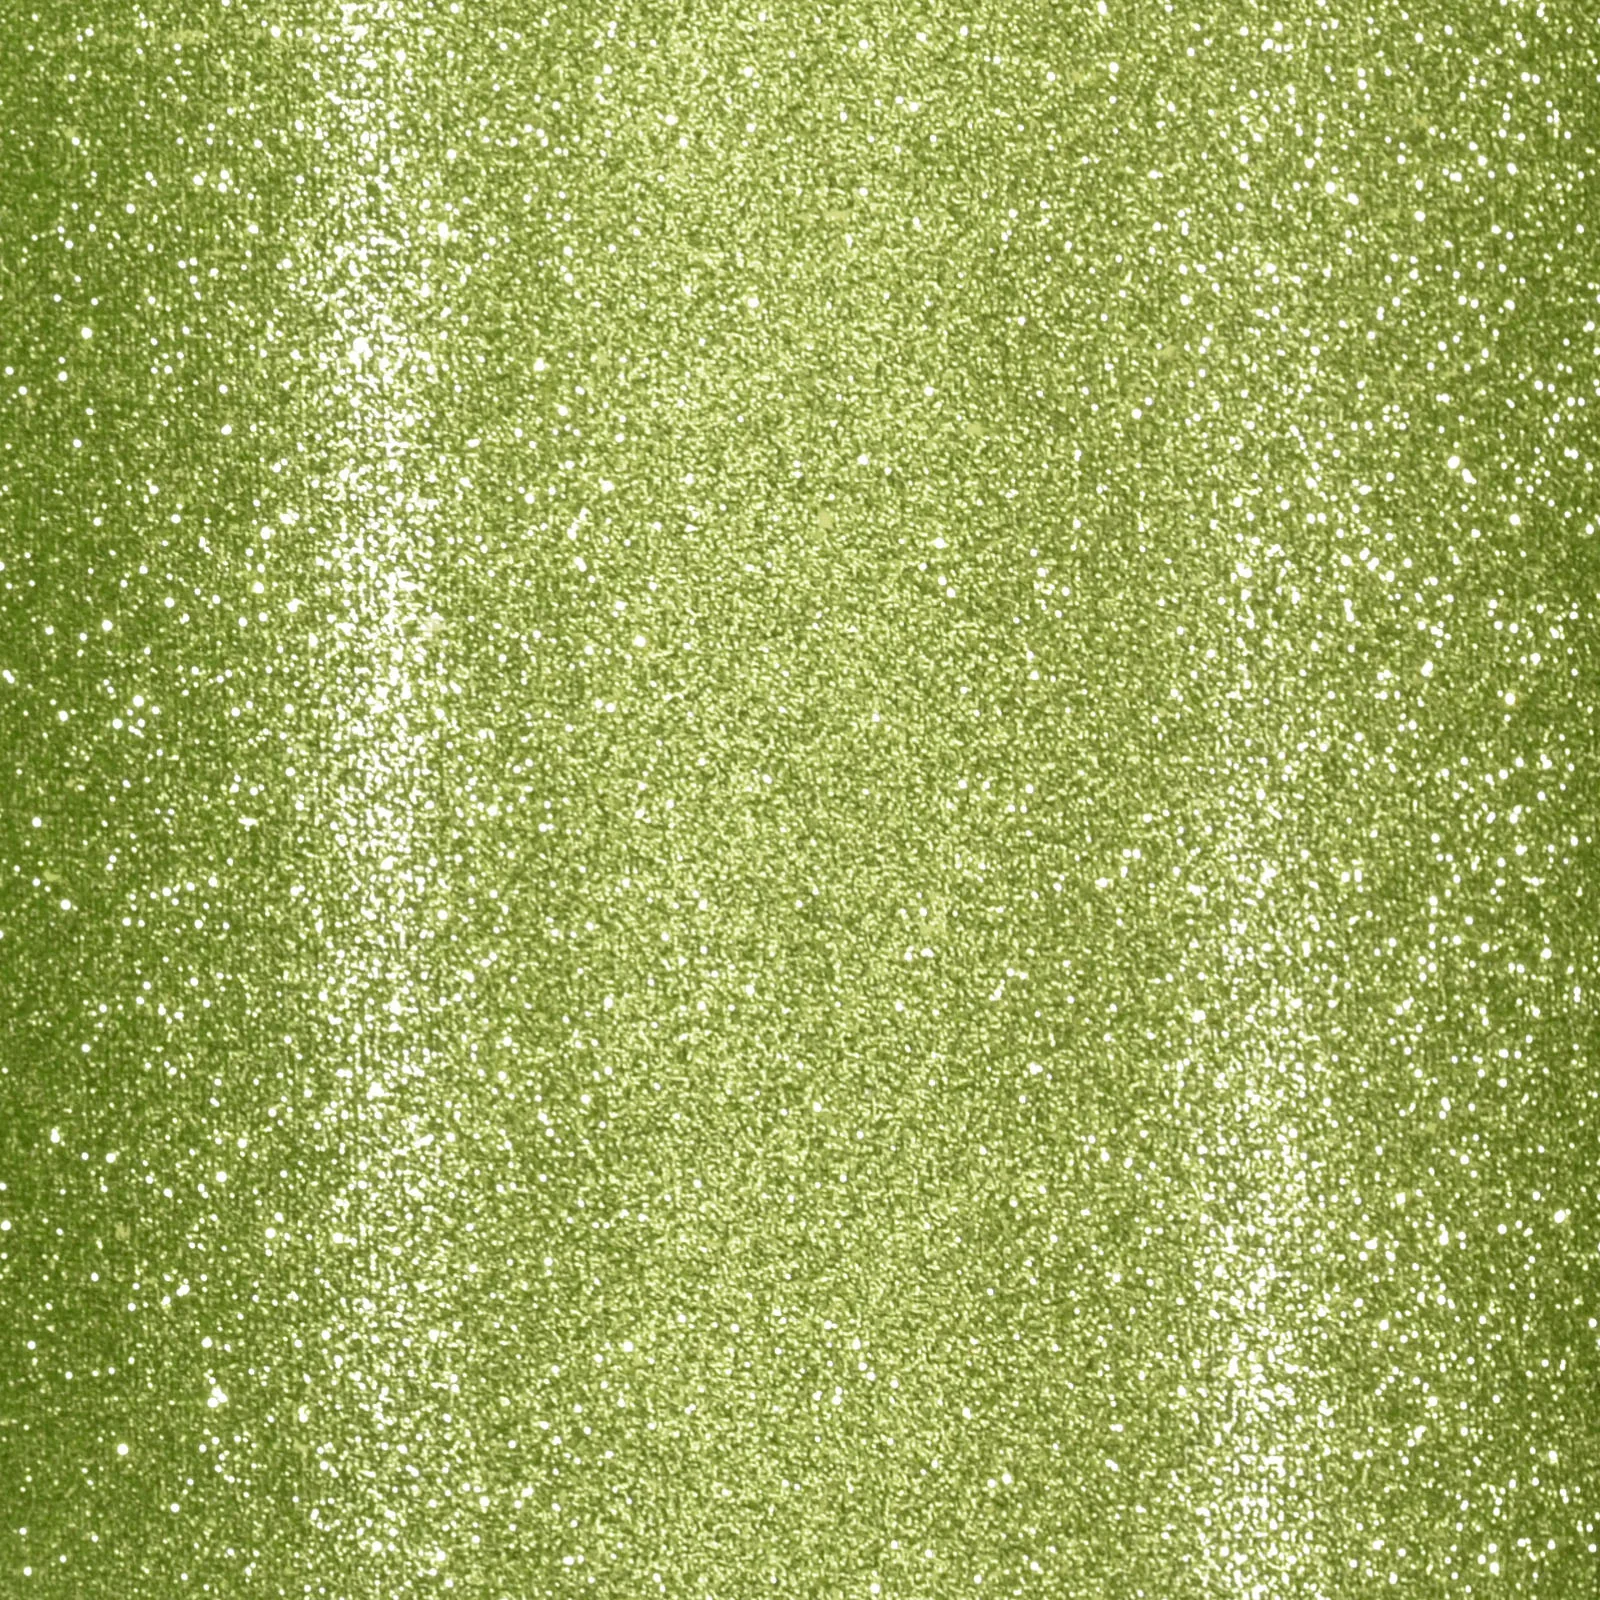 2111-001 Florence Self-Adhesive Glitter Paper 160 g. Lime lysegrøn limegrøn karton papir selvklæbende glitter glimmer